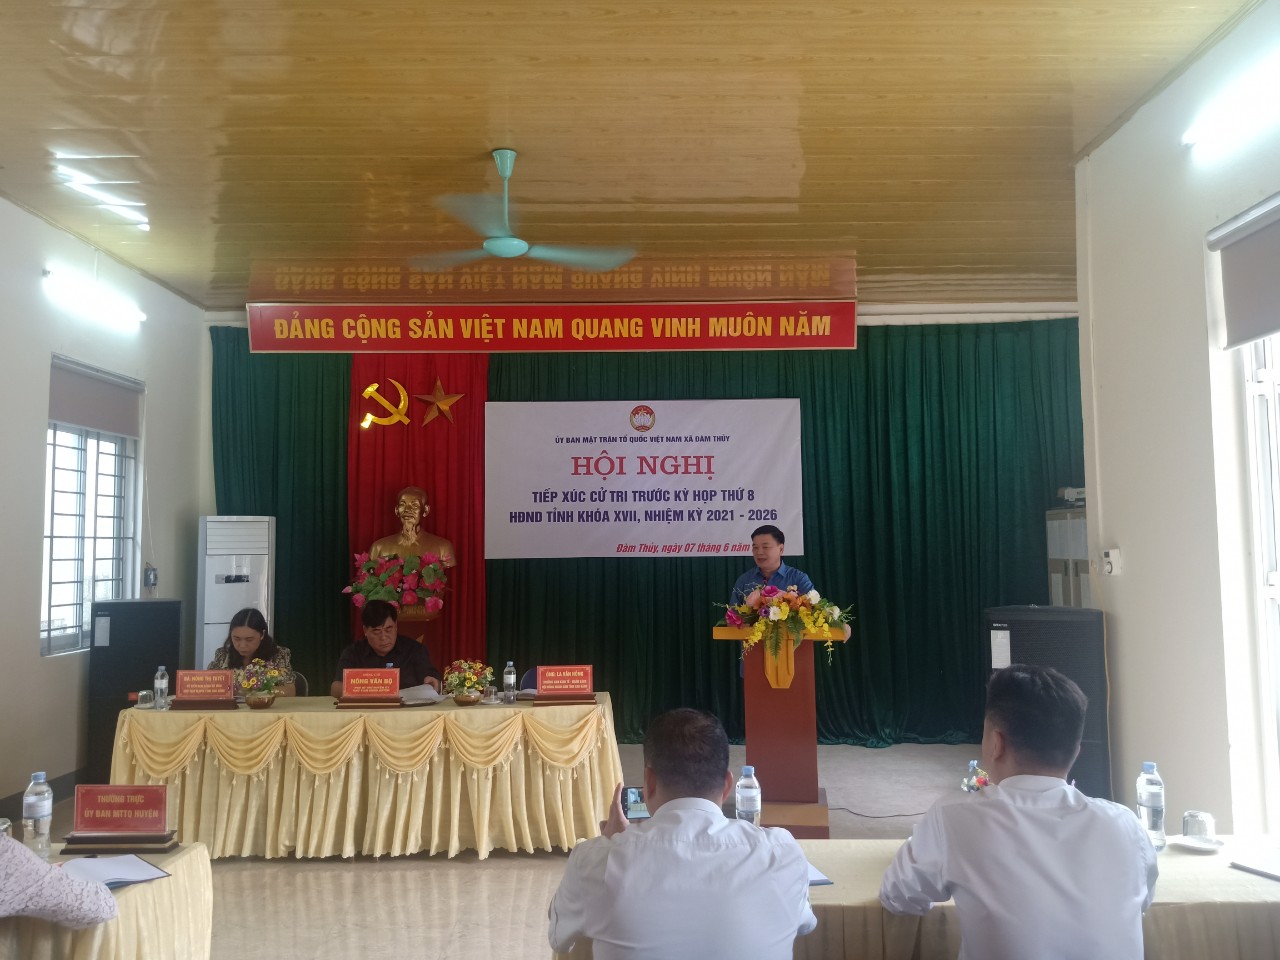 Đại biểu HĐND tỉnh tiếp xúc cử tri trước kỳ họp thứ 8 Hội đồng nhân dân tỉnh Cao Bằng khoá XVII, nhiệm kỳ 2021 – 2026 tại UBND xã Đàm Thủy